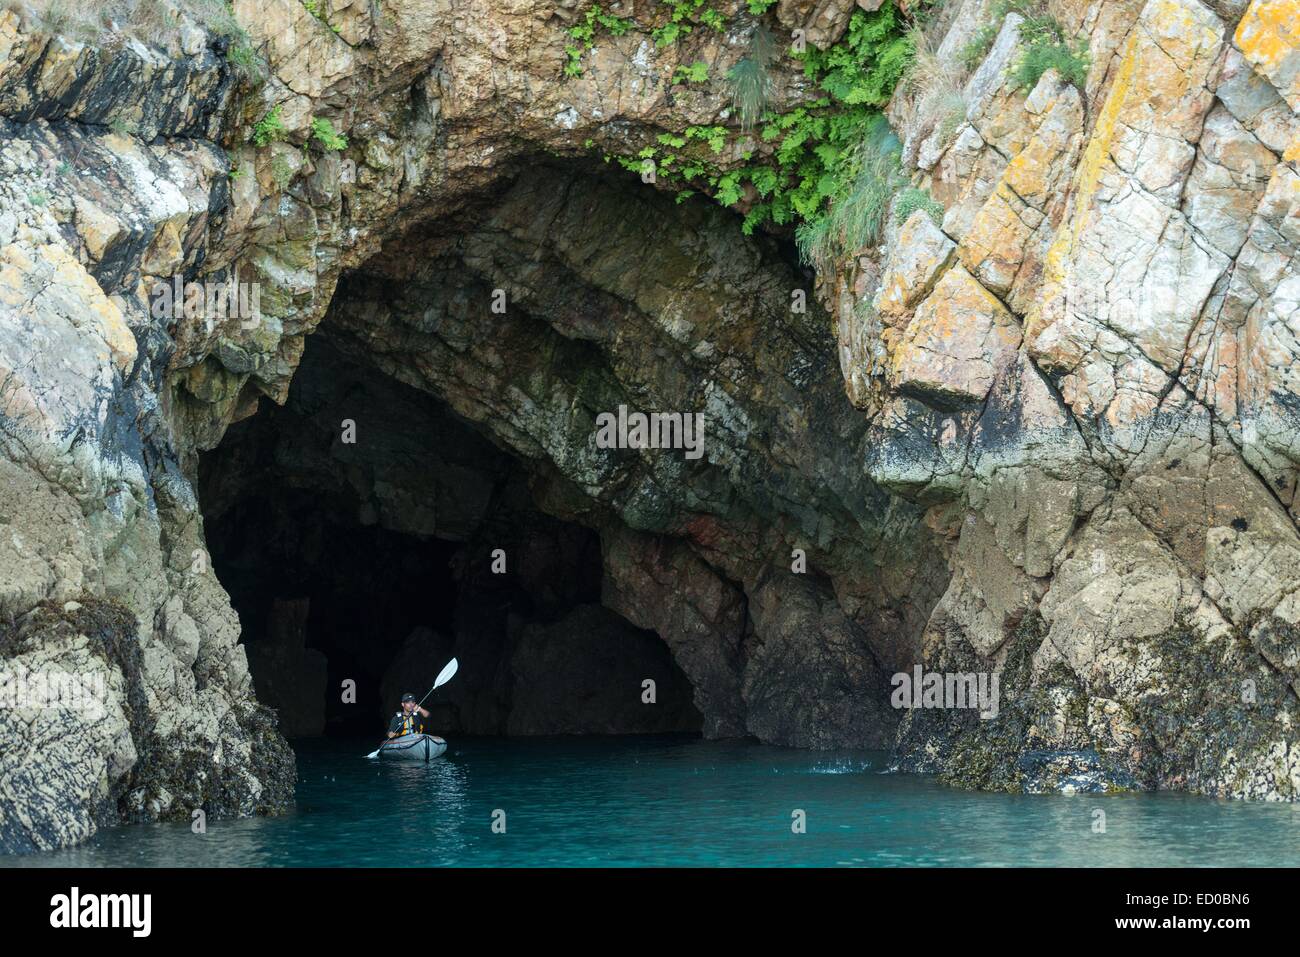 La France, Finistère, Crozon, kayak à l'exploration des cavernes dans la presqu'île de Crozon Banque D'Images